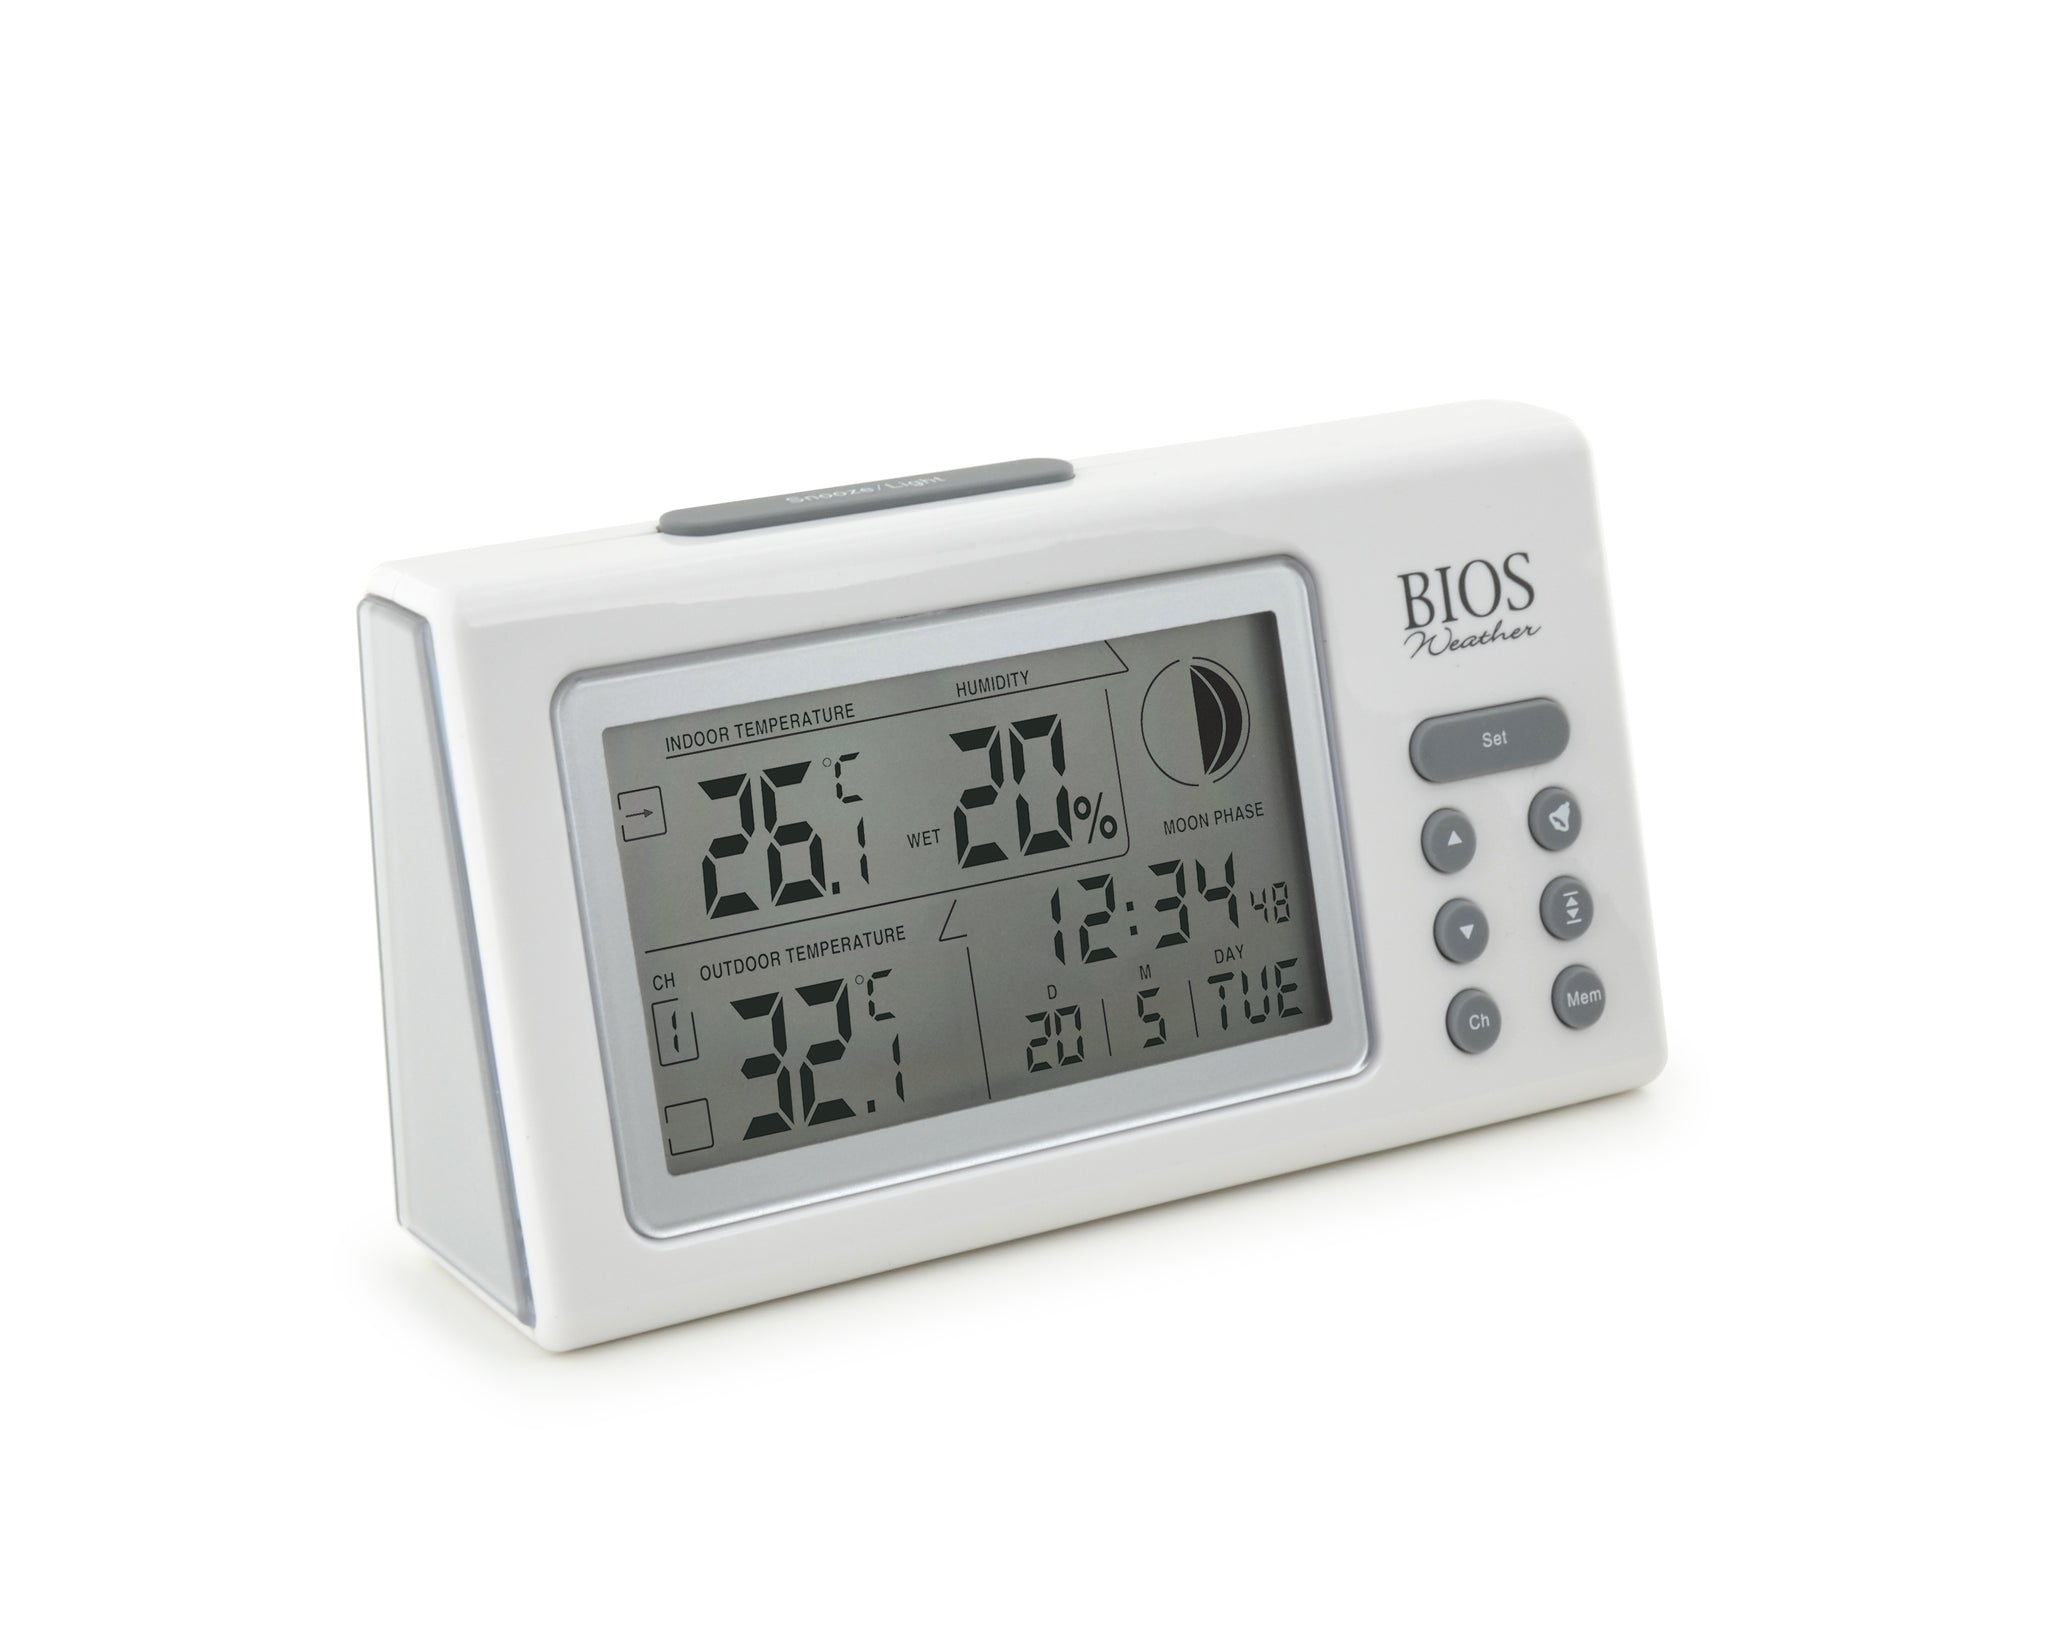 Thermomètre hygromètre intérieur, 1 unité – BIOS : Thermomètre et